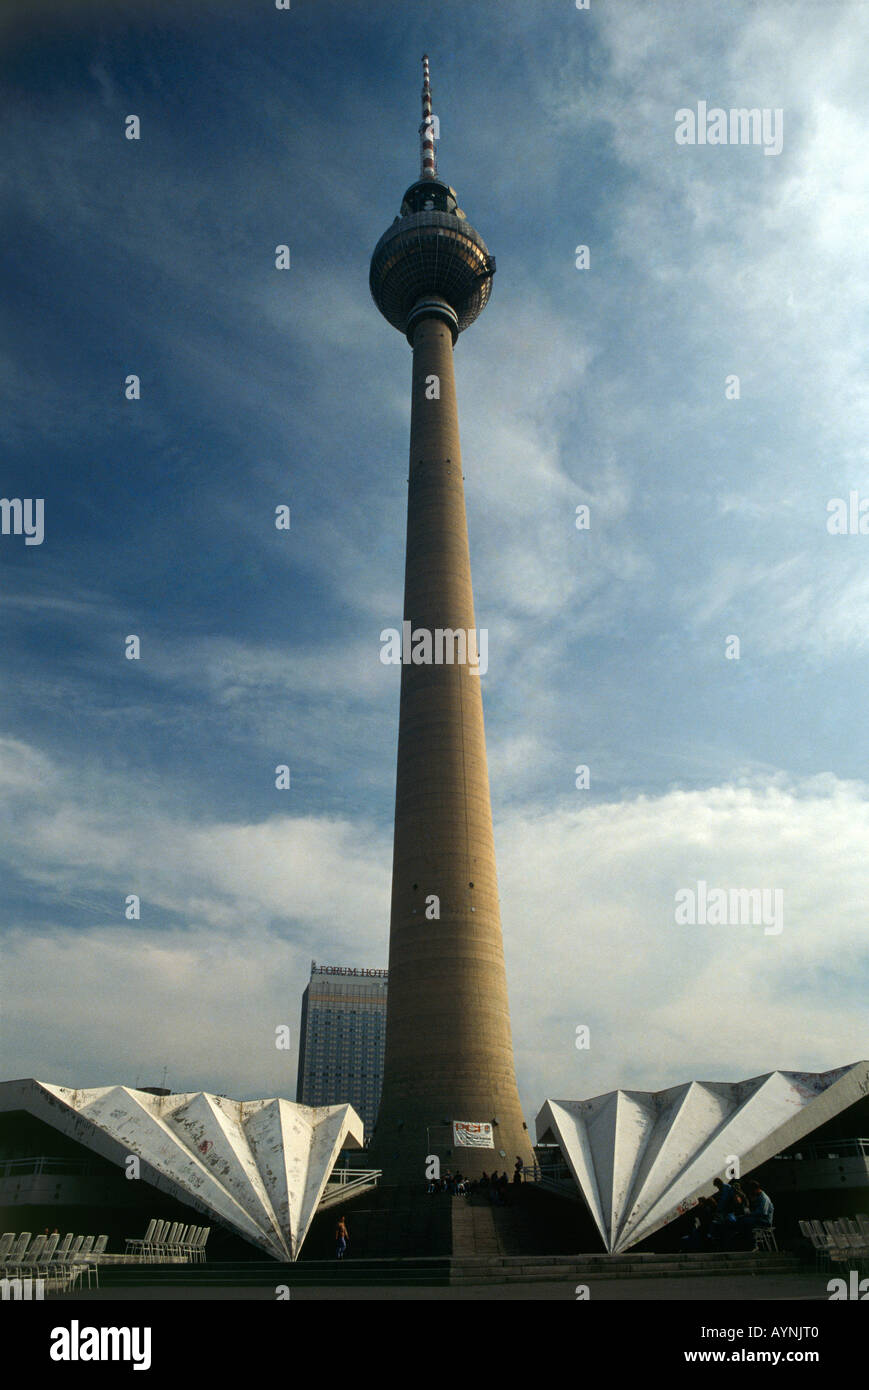 La tour de télévision Fernsehturm Alexanderplatz à Berlin l'un des principaux monuments s avec une plate-forme d'observation à 207 mètres et un restaurant tournant Banque D'Images